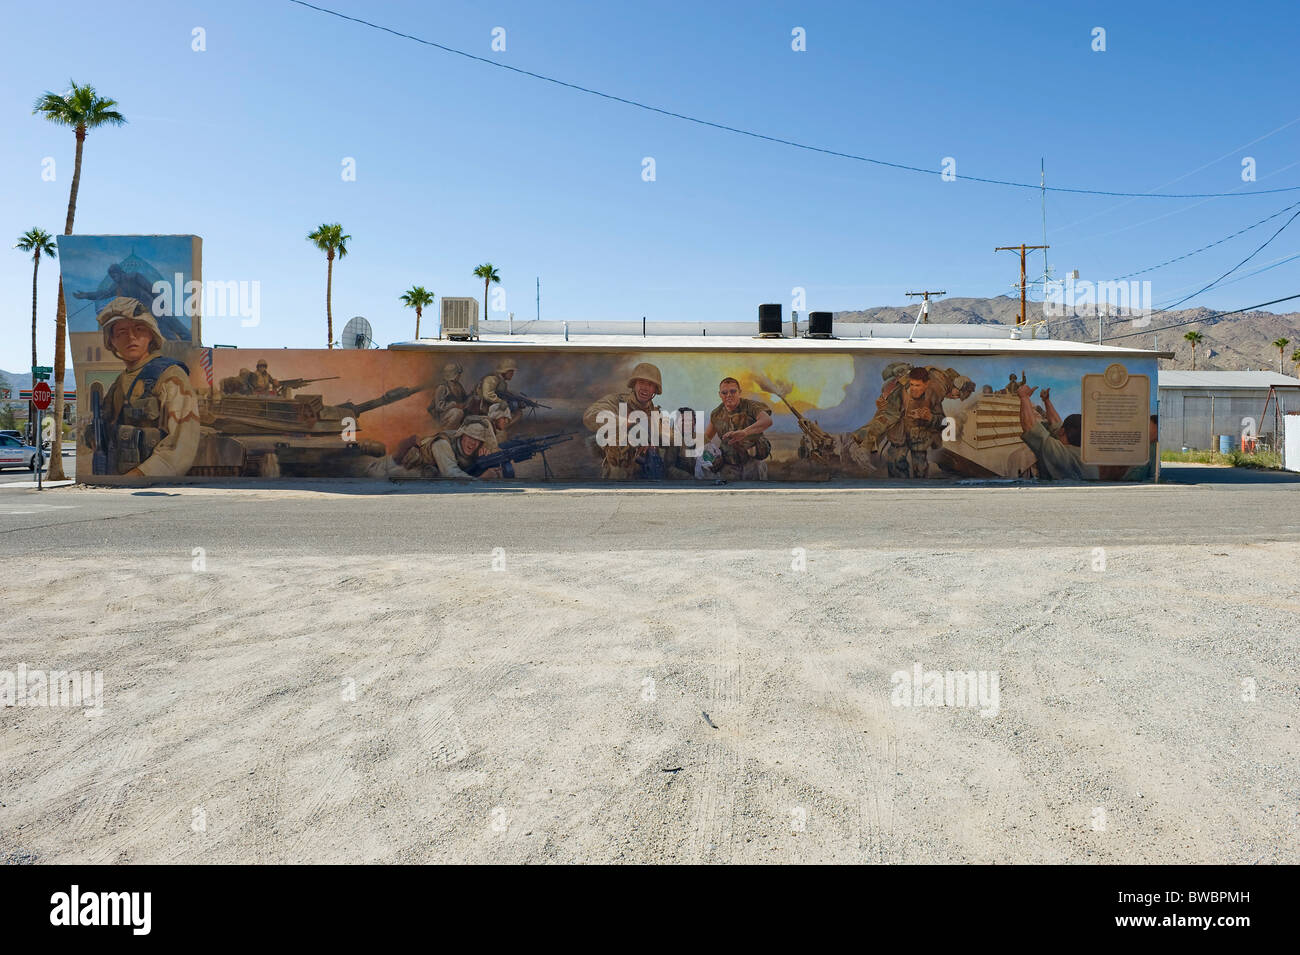 Wandbild-Gemälde Krieg und US-Marines-Truppen, befindet sich das Wandbild im Twenty Nine Palms, California. Stockfoto